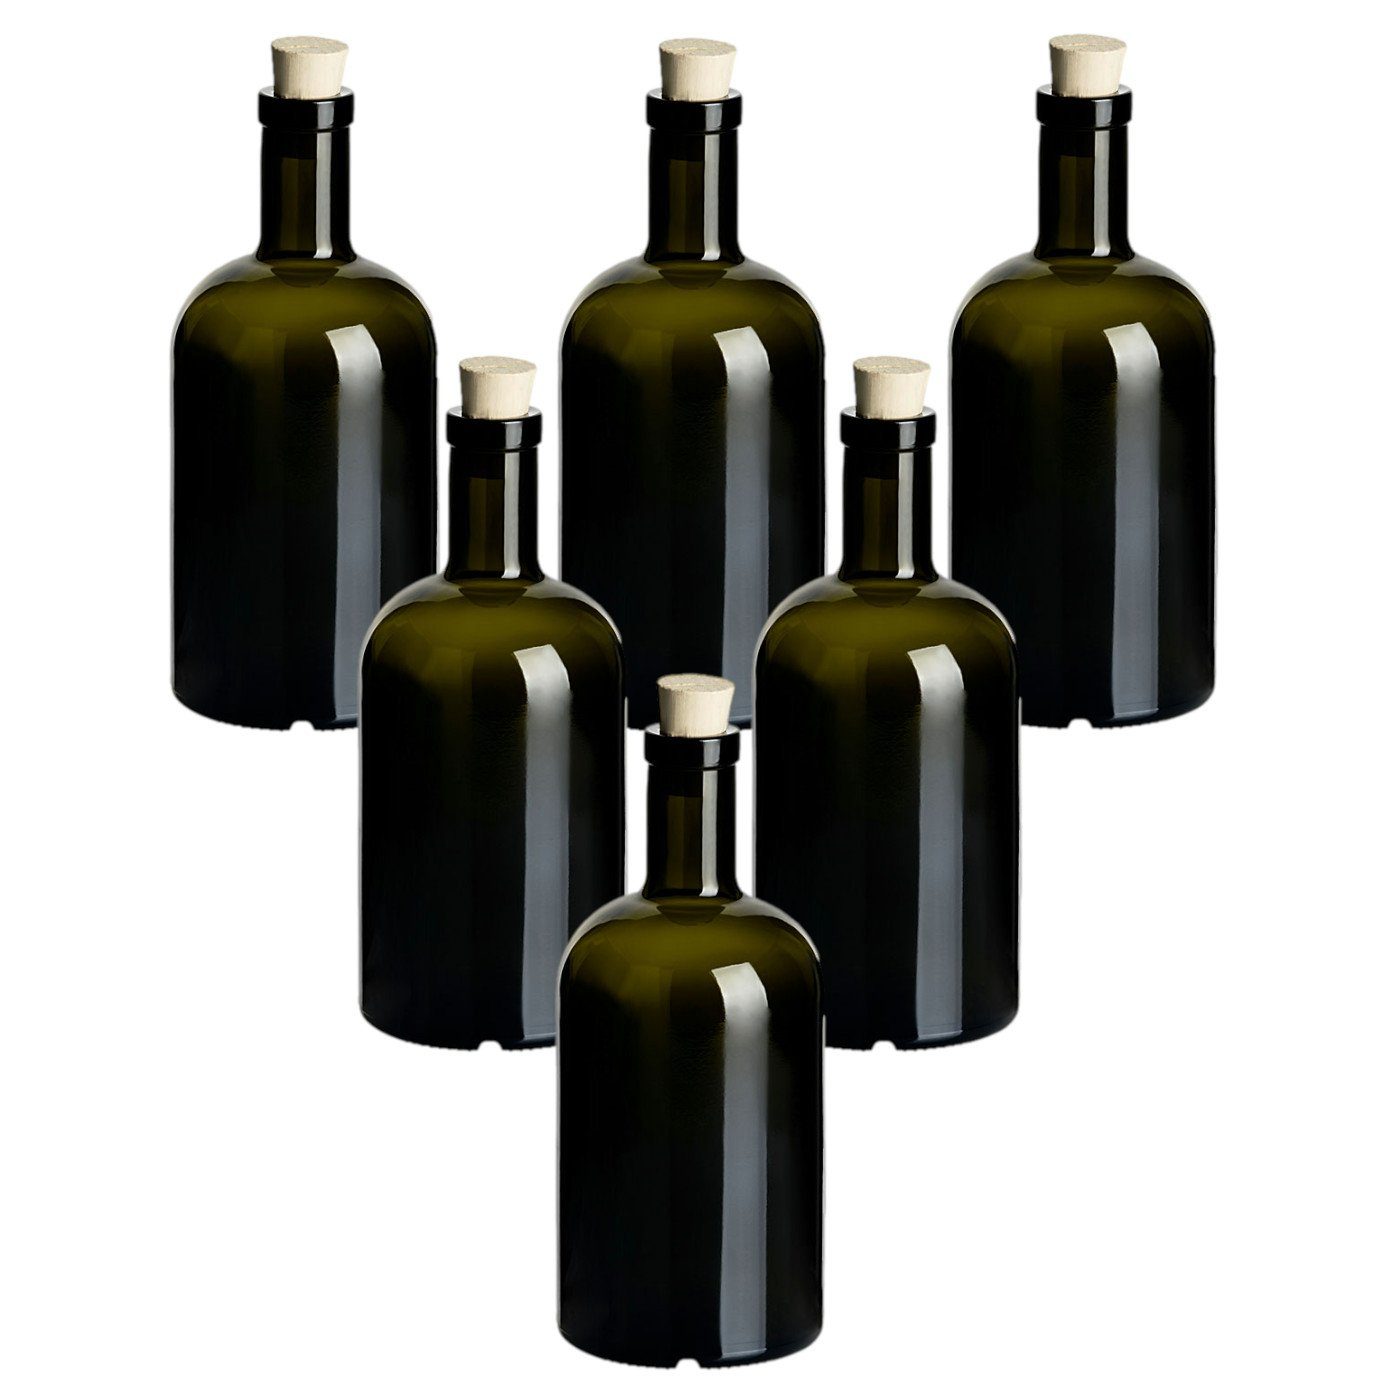 gouveo Trinkflasche Glasflaschen “Klassik” mit Korken - Runde Flasche aus Glas, 6er Set 500ml, Antik, Spitzkorken